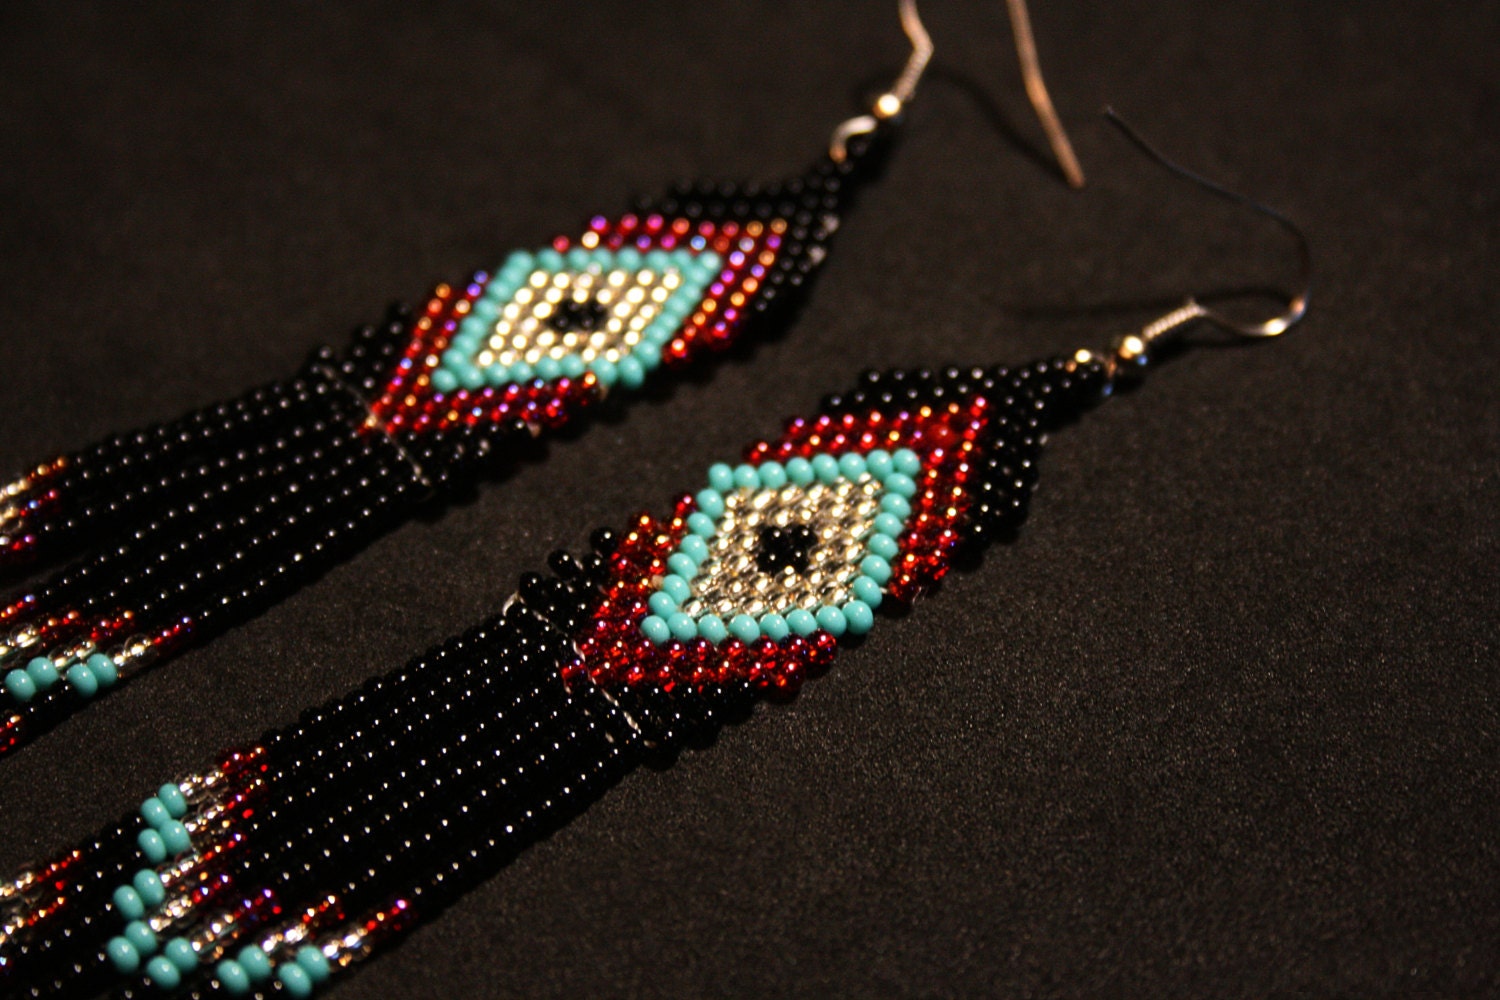 Little Mocha Earrings, Native Beadwork